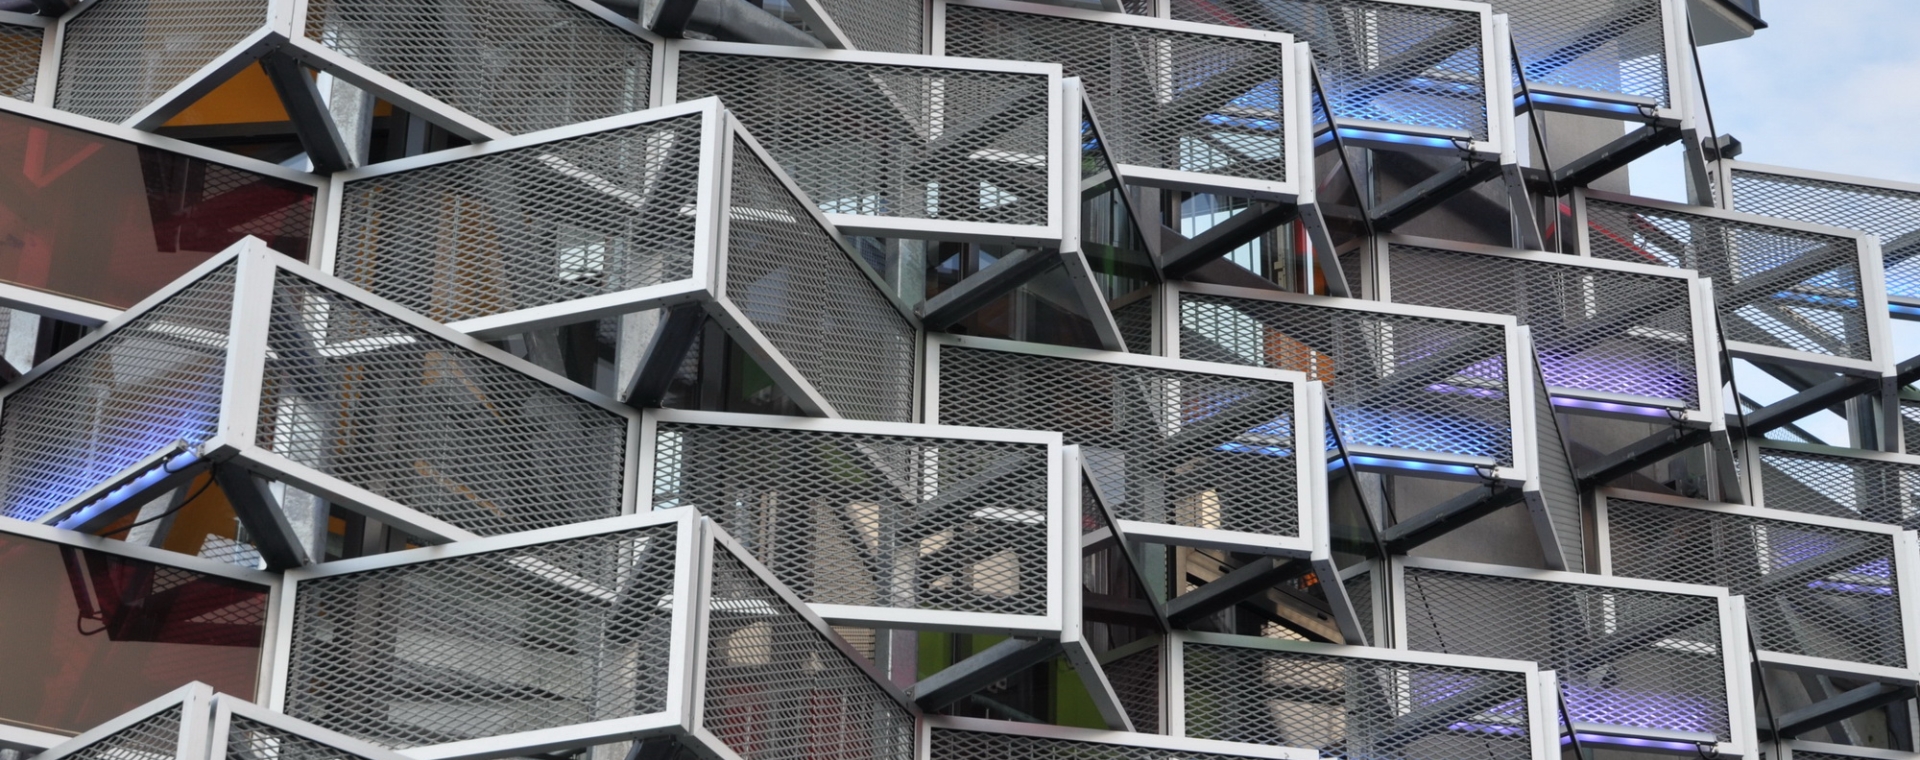 建筑裝飾孔鋼板網安裝在建筑外墻。